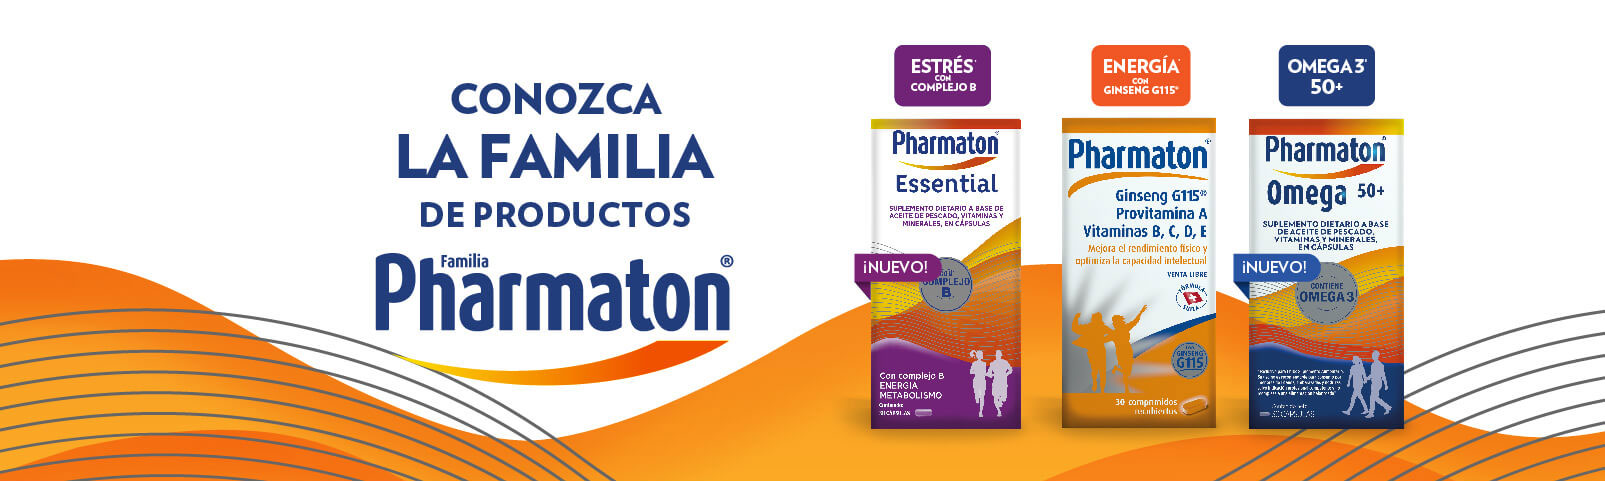 Conozca la familia de productos Pharmaton